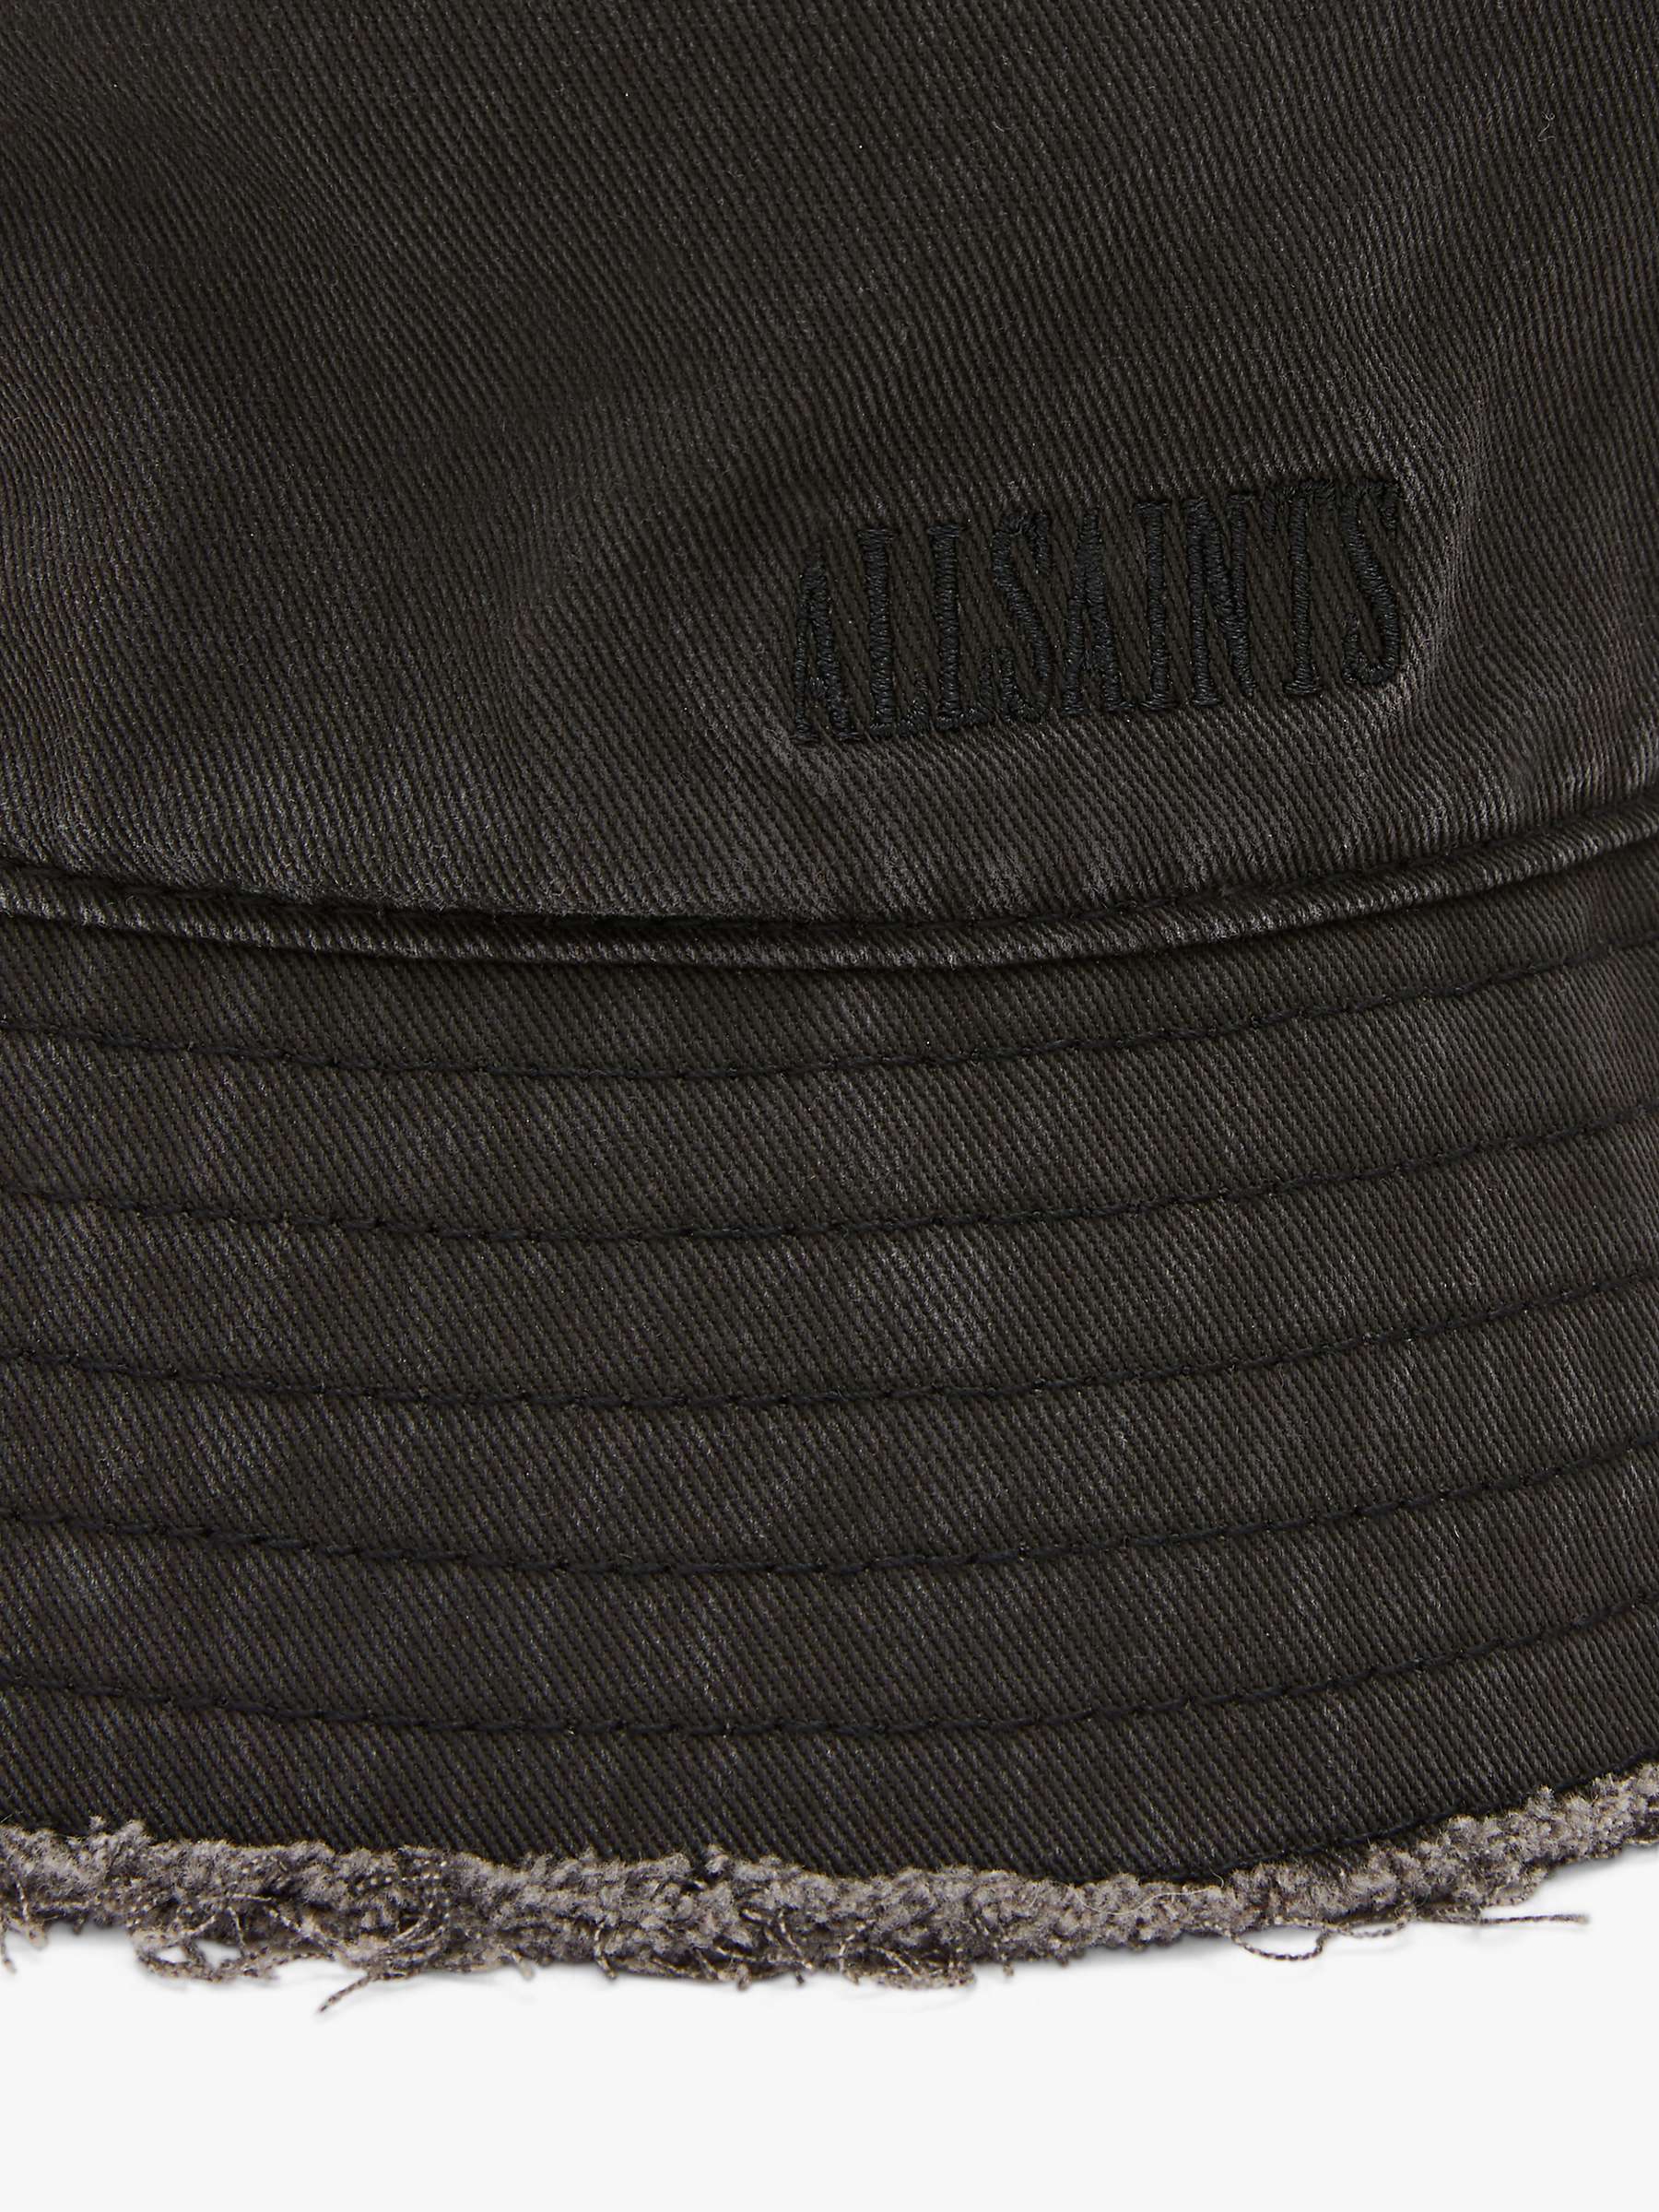 Buy AllSaints Skye Bucket Hat, Washed Black Online at johnlewis.com